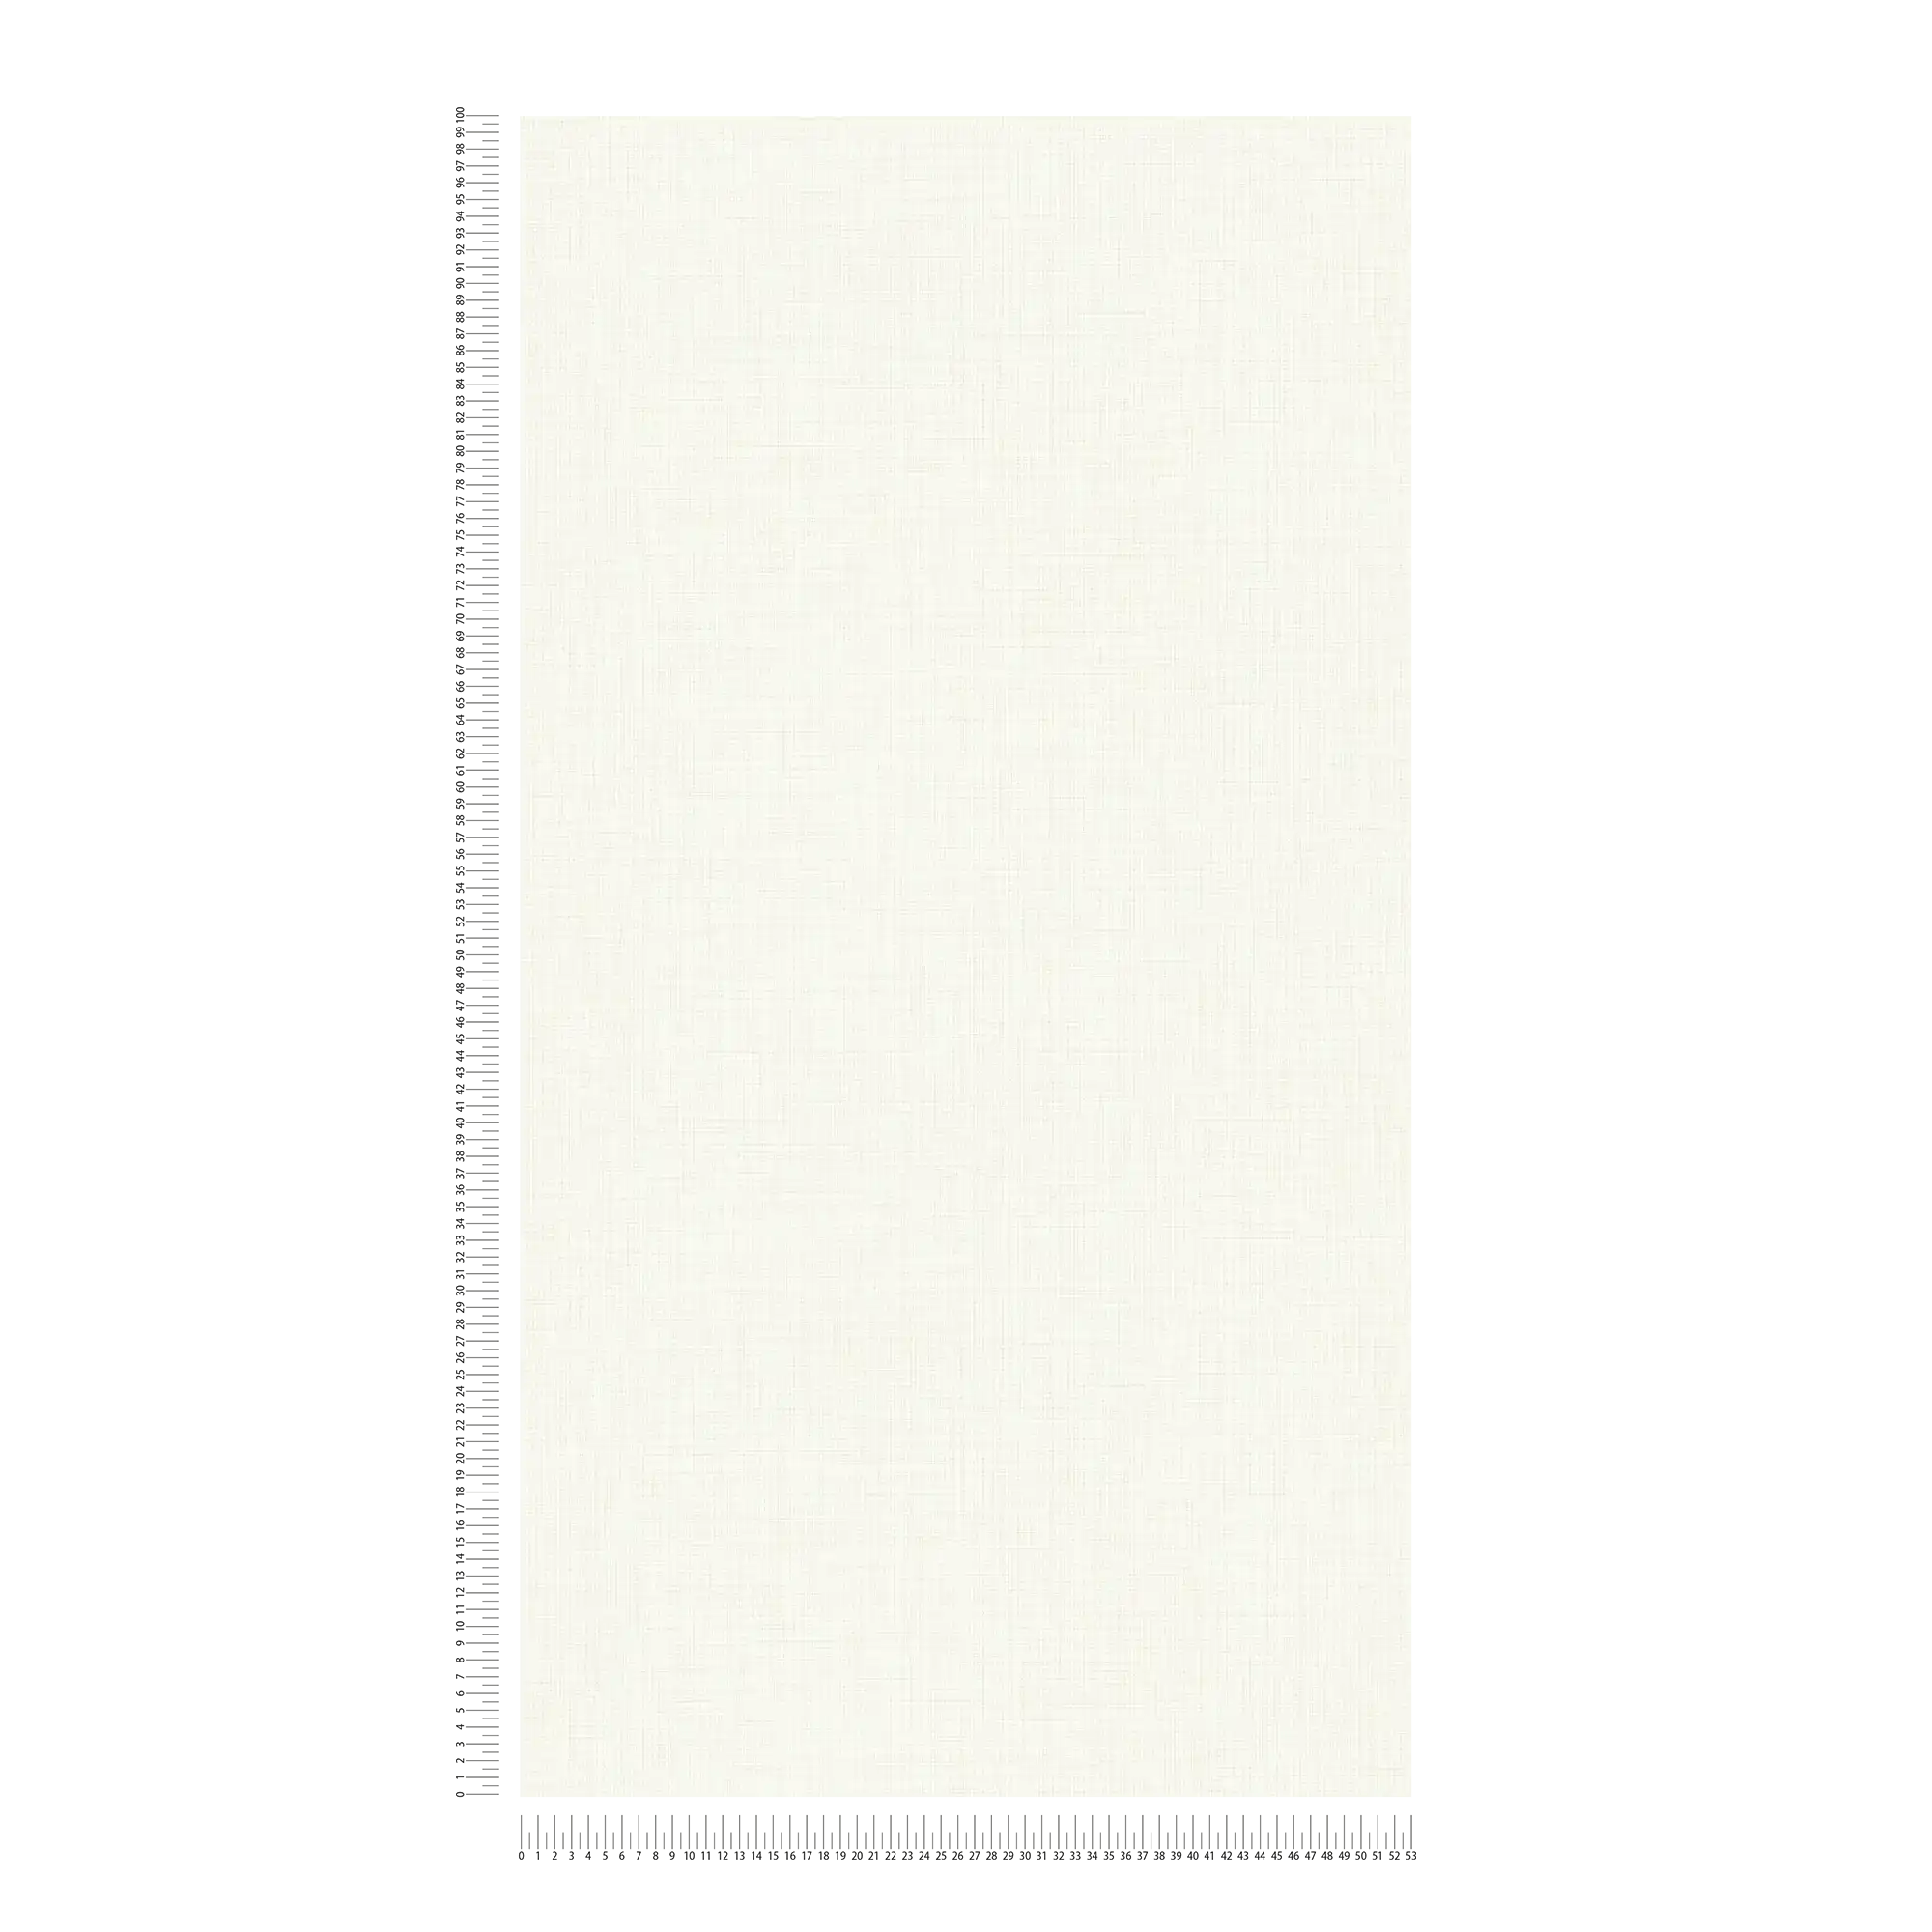             Papier peint aspect lin Blanc crème de MICHALSKY
        